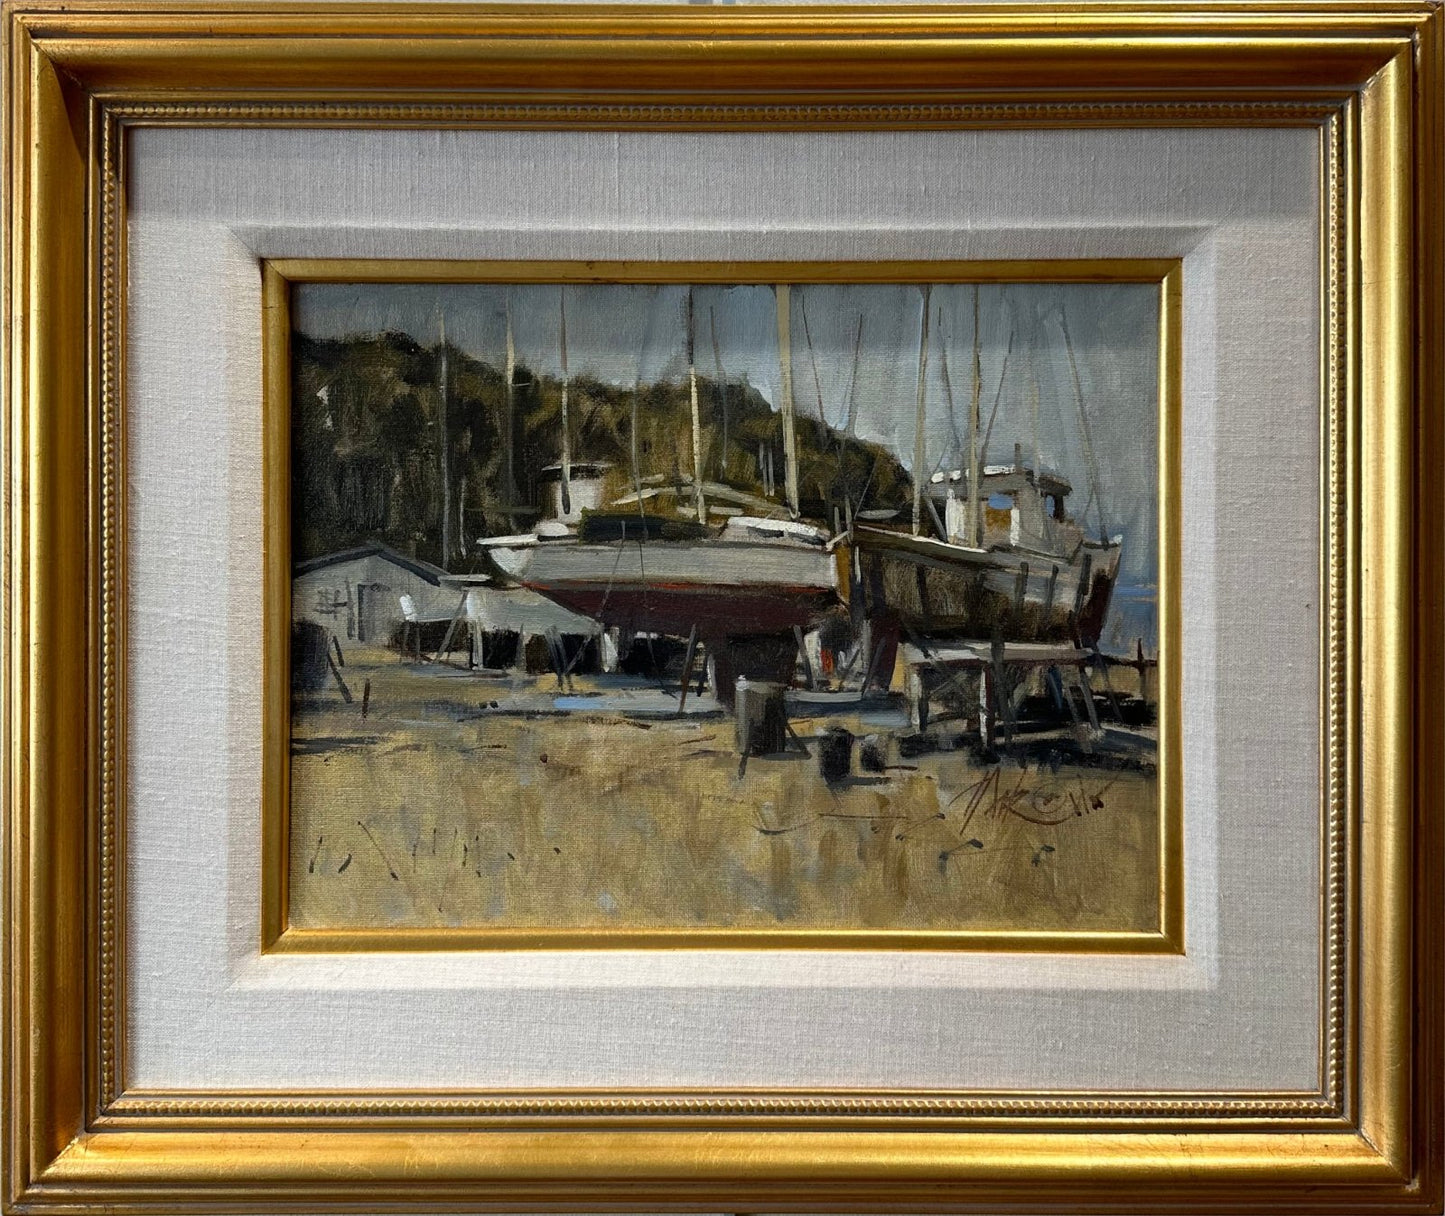 Boatyard by George Pate at LePrince Galleries